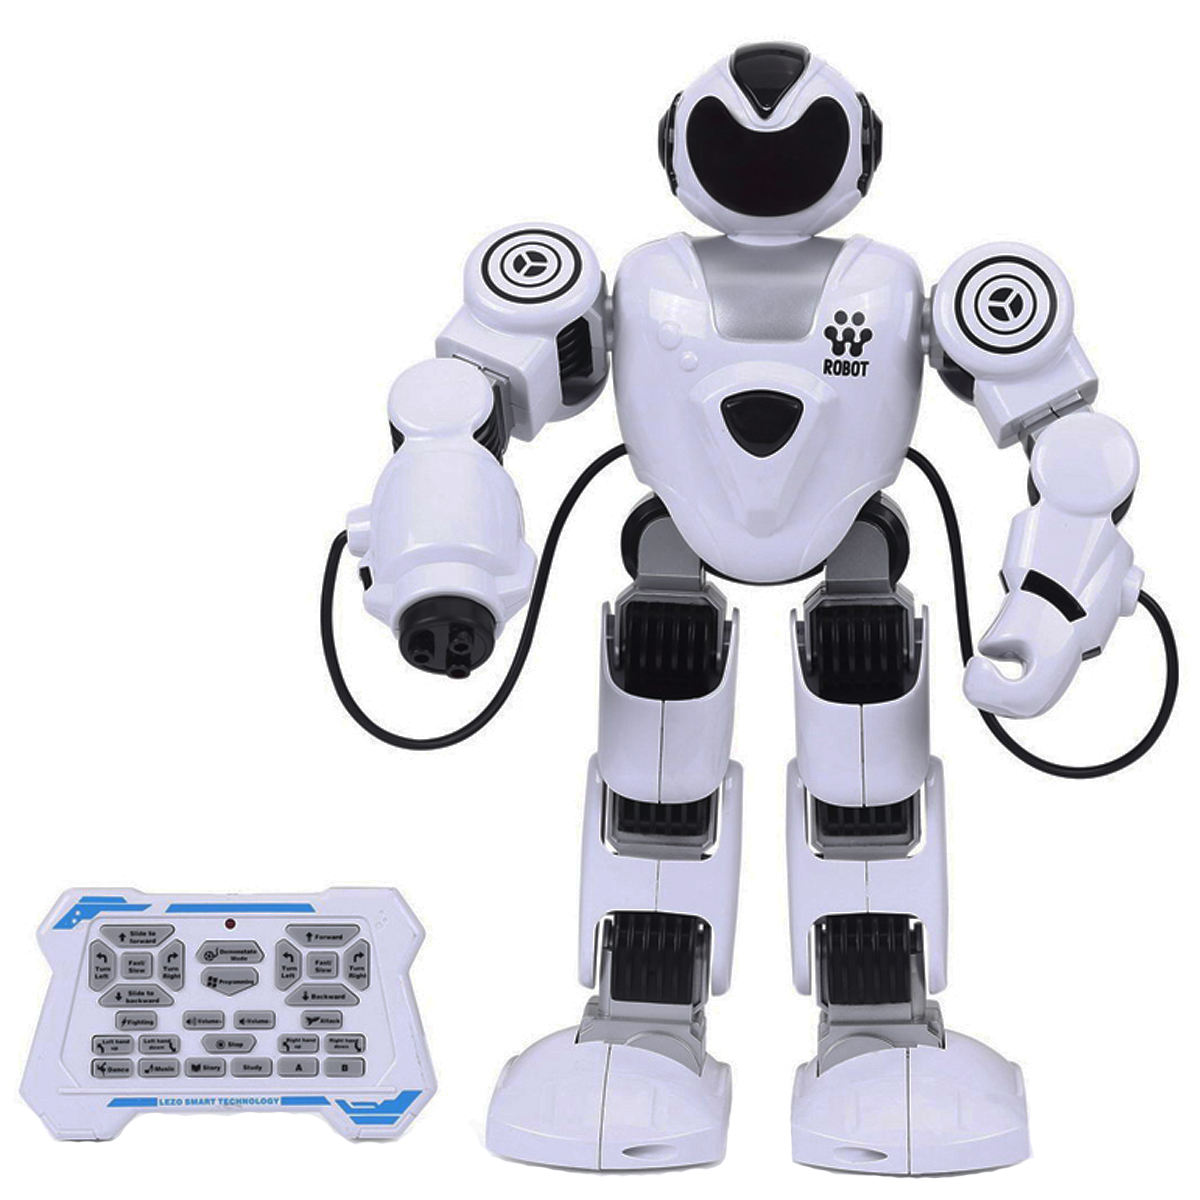 ربات های اسباب بازی برند نامشخص-- اسباب بازی مدل ربات کد 8977